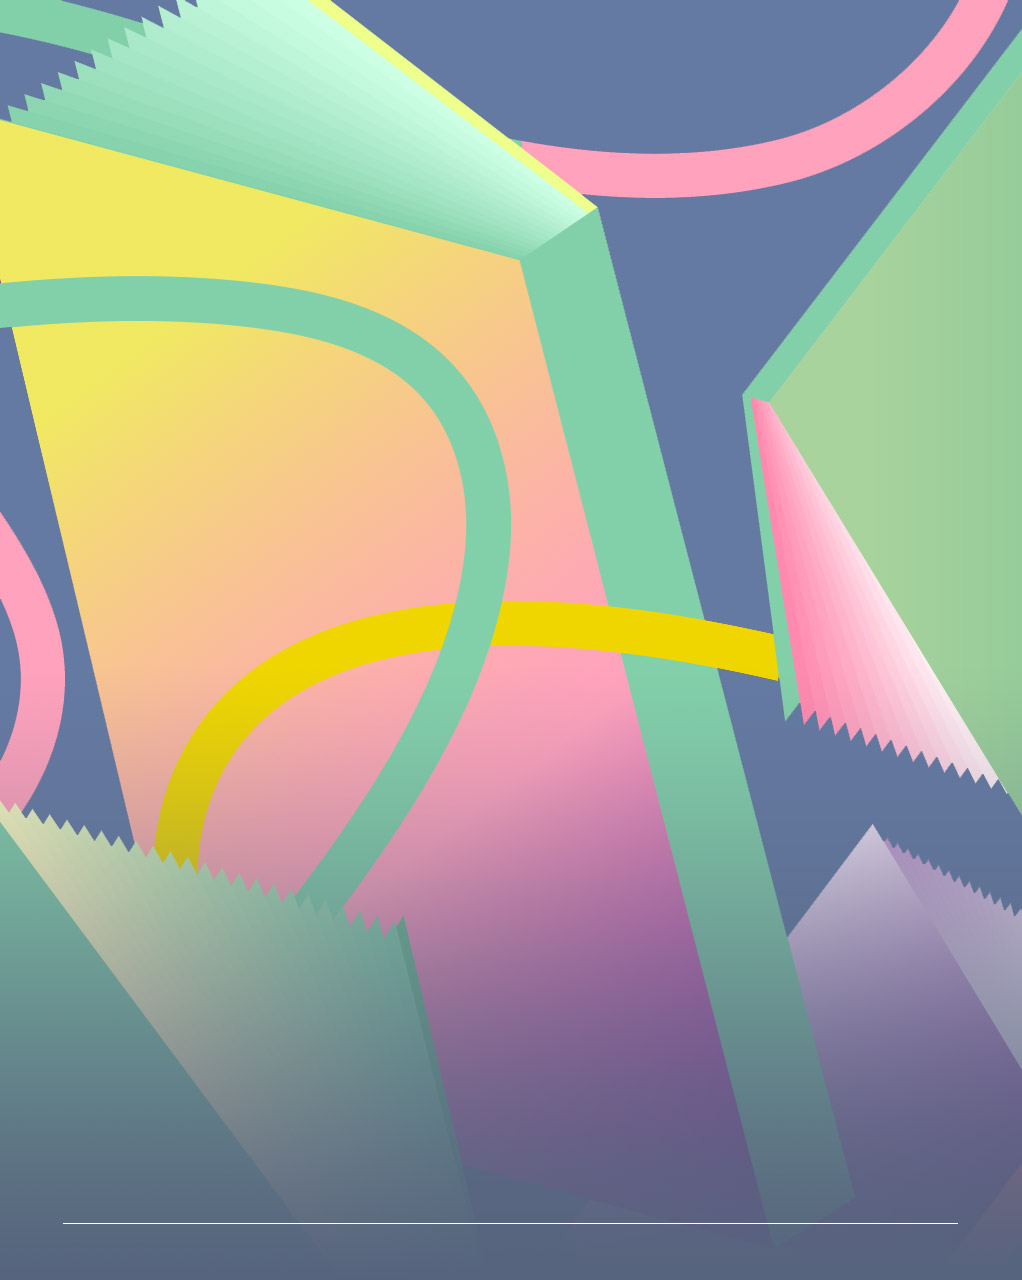 Immagine astratta con colori pastello formata da linee circolari e parallelepipedi